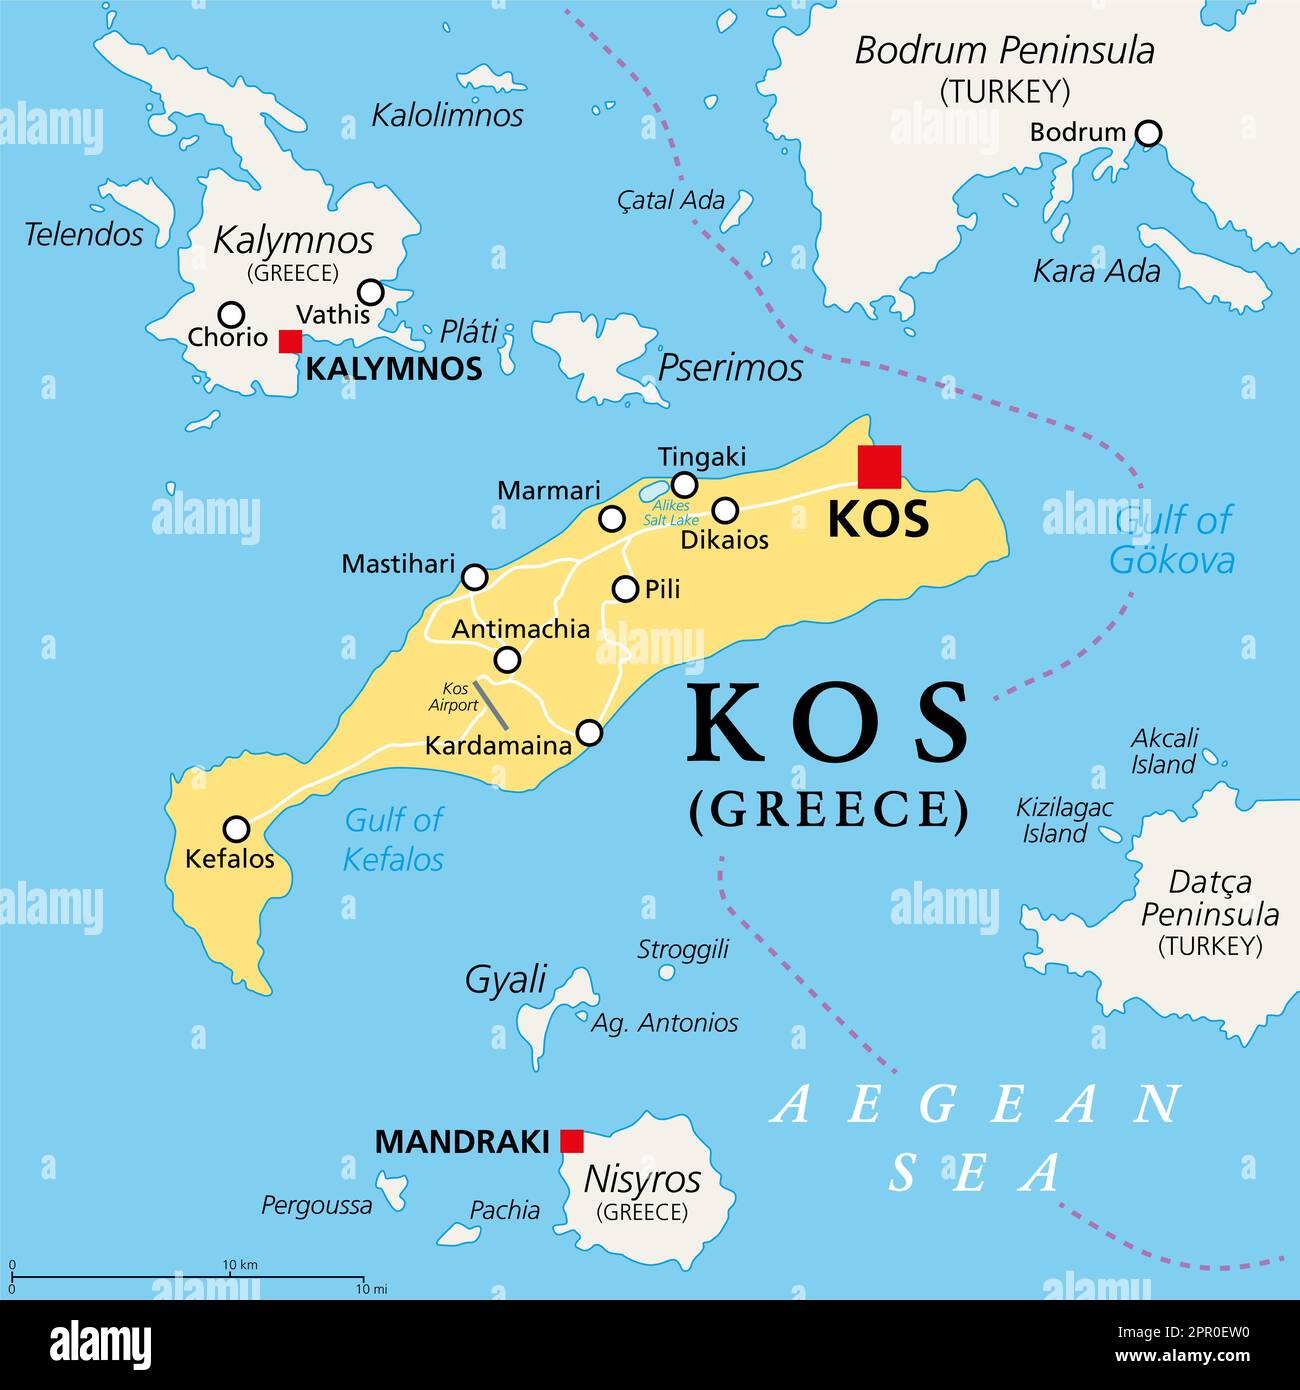 Kos, île grecque, carte politique. Aussi COS, une partie des îles Dodécanèse dans la mer Égée, à côté de la péninsule turque de Bodrum. Banque D'Images